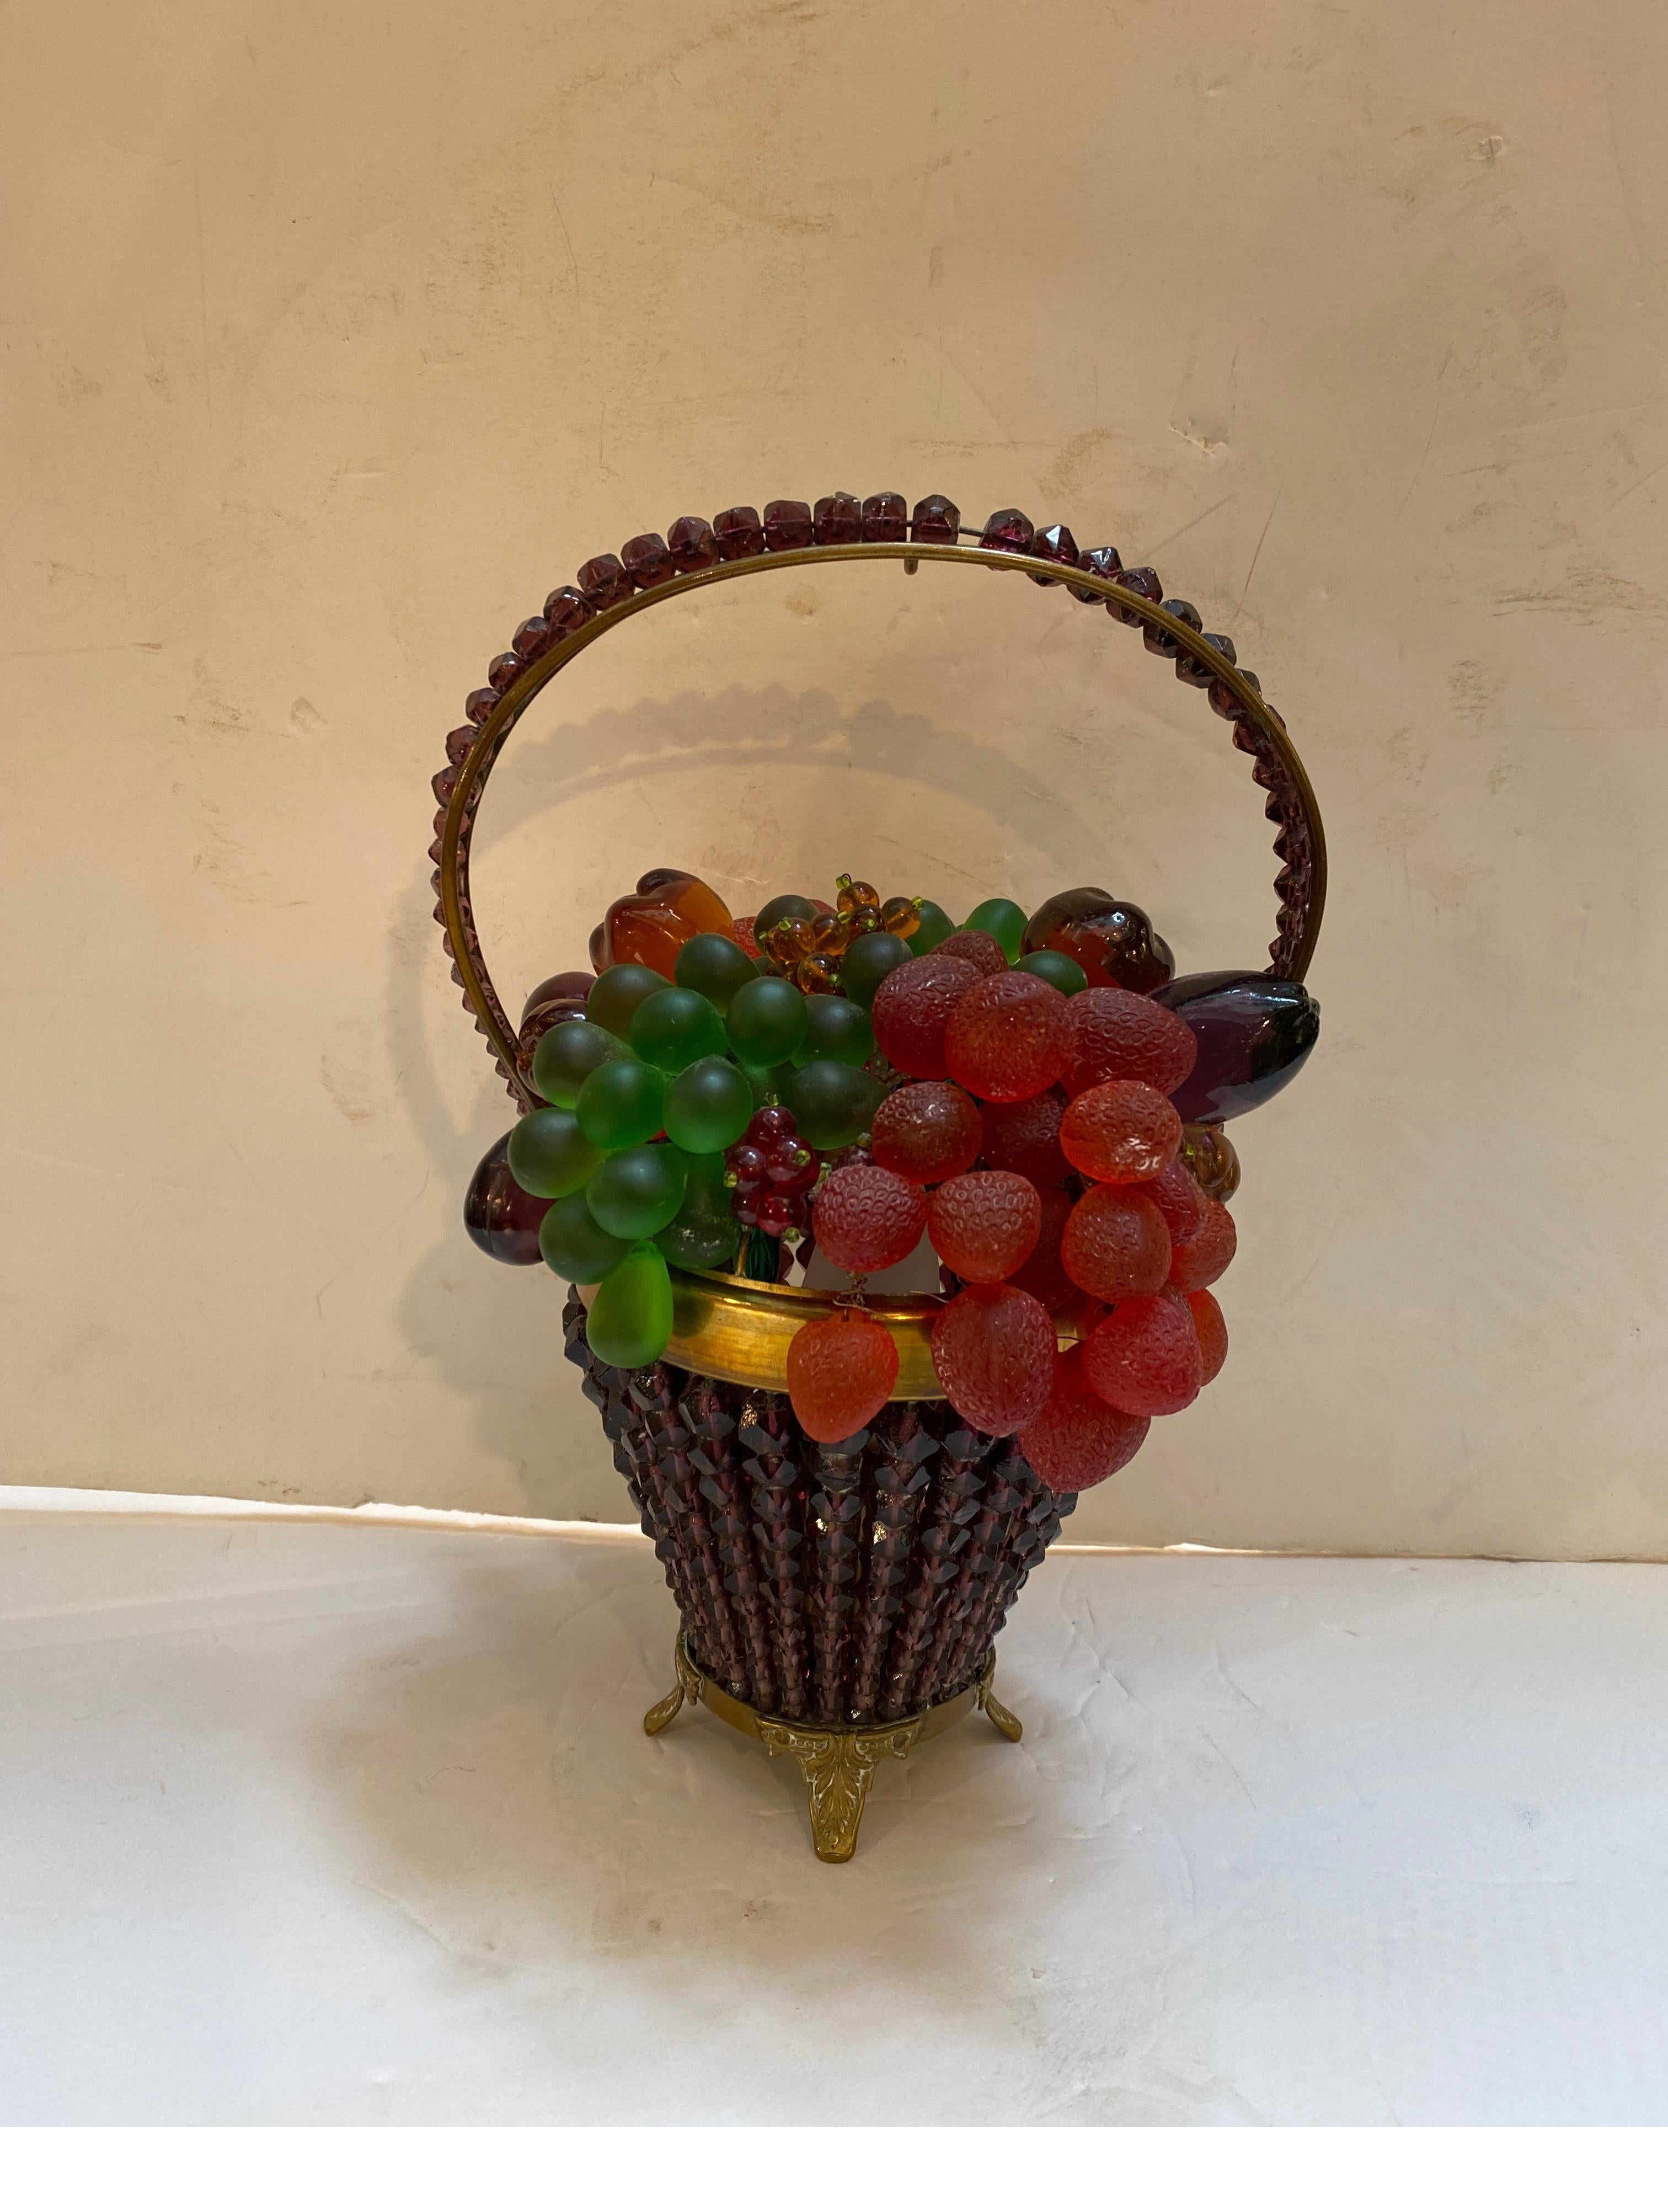 Lampe fantaisiste en forme de panier de fruits en verre tchèque perlé des années 1920. L'anse en perles avec des perles en forme de fruits formant le remplissage du panier. La forme métallique de l'anse et du panier est en laiton et les perles de